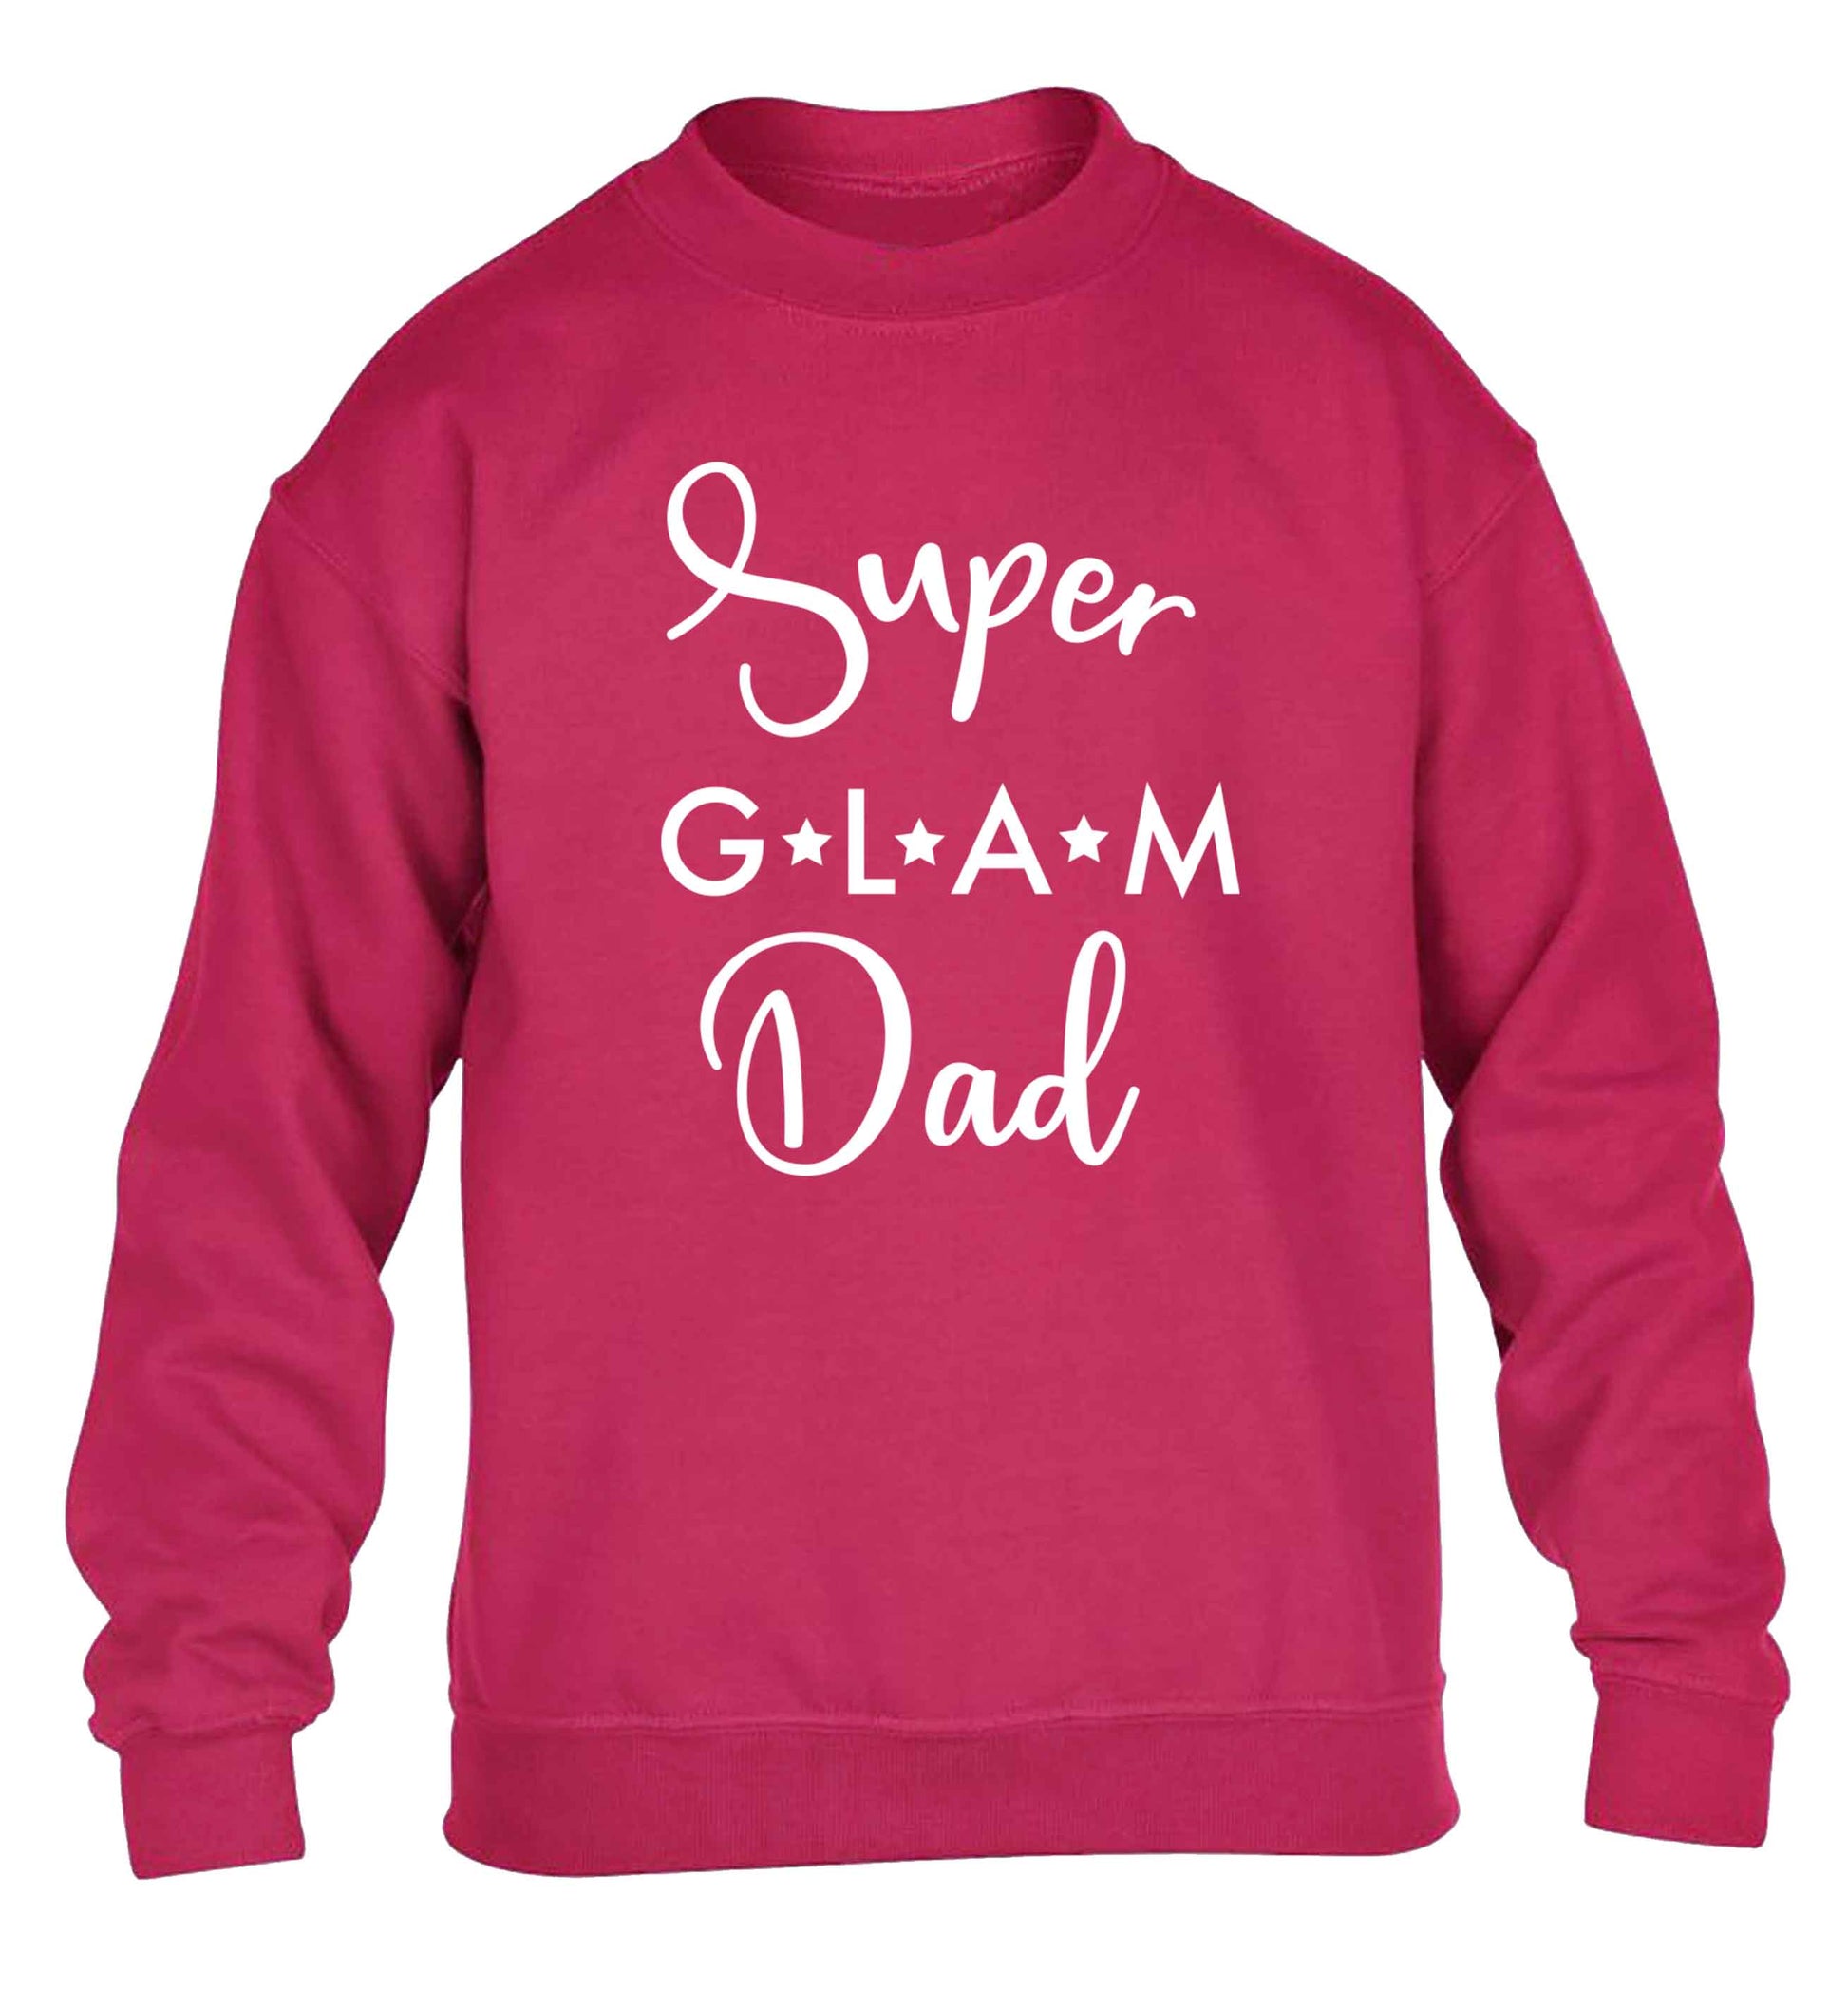 Super glam Dad children's pink sweater 12-13 Years